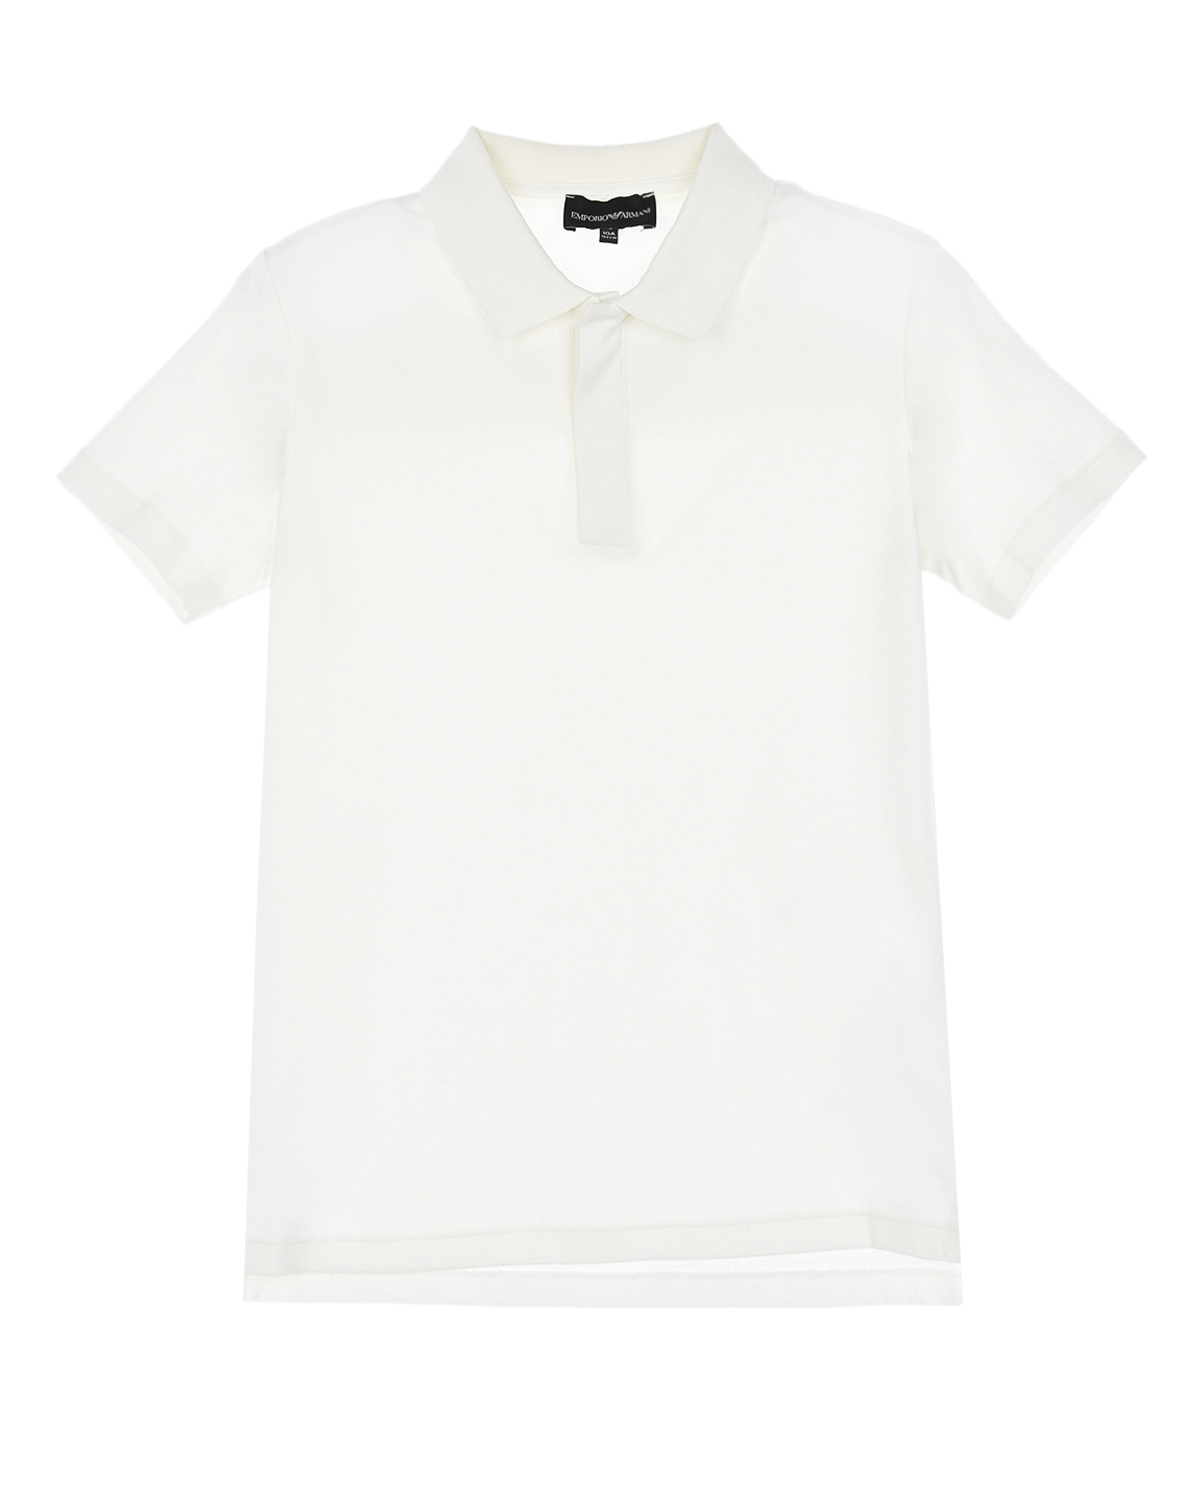 Купить Белая футболка-поло на молнии Emporio Armani детская, Белый, 100%хлопок